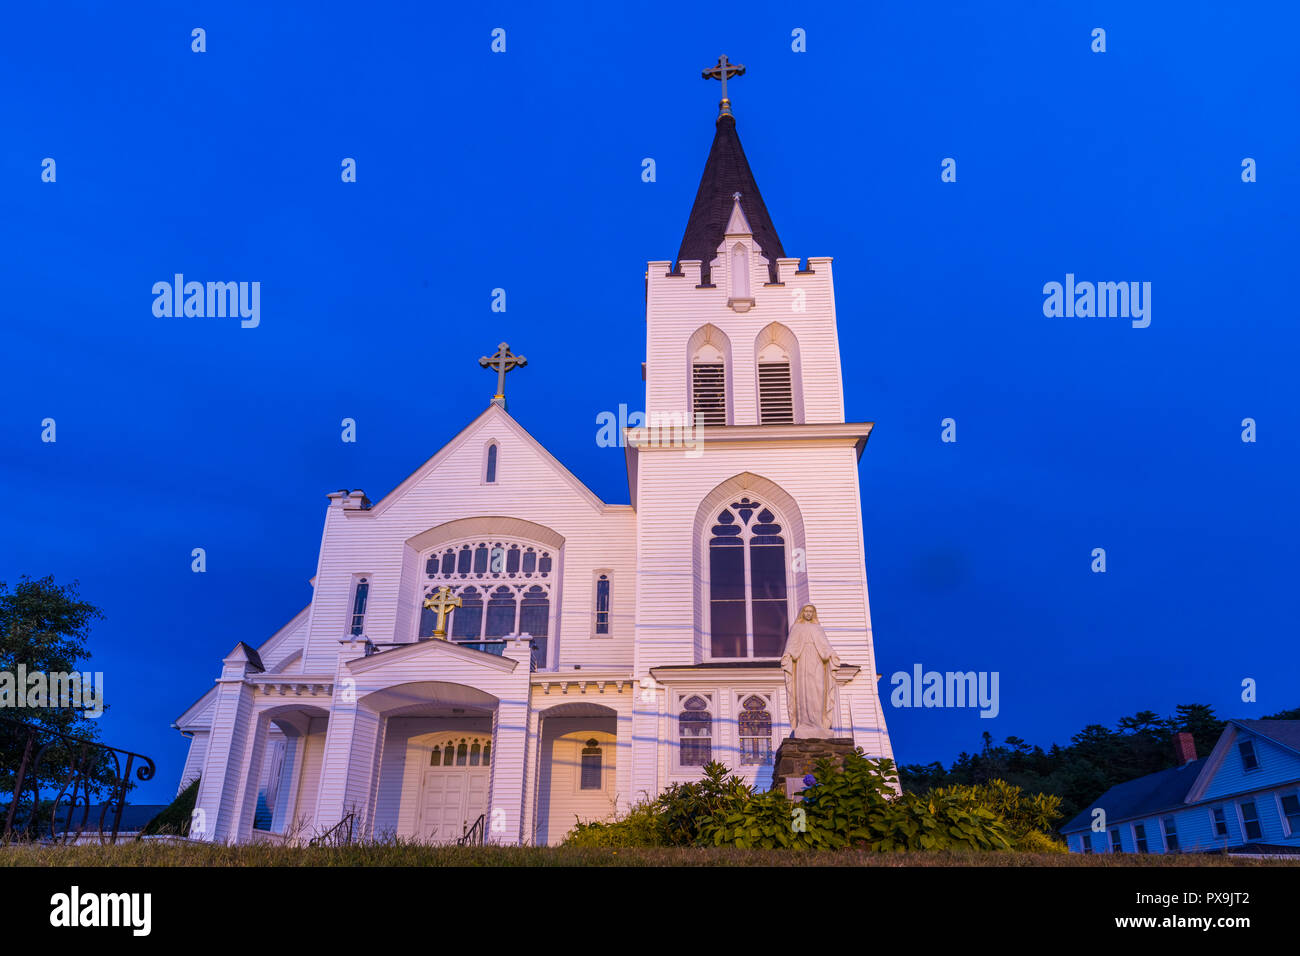 Notre Dame Reine de la paix de l'Église catholique éclairé la nuit dans Boothbay Harbor Maine Banque D'Images